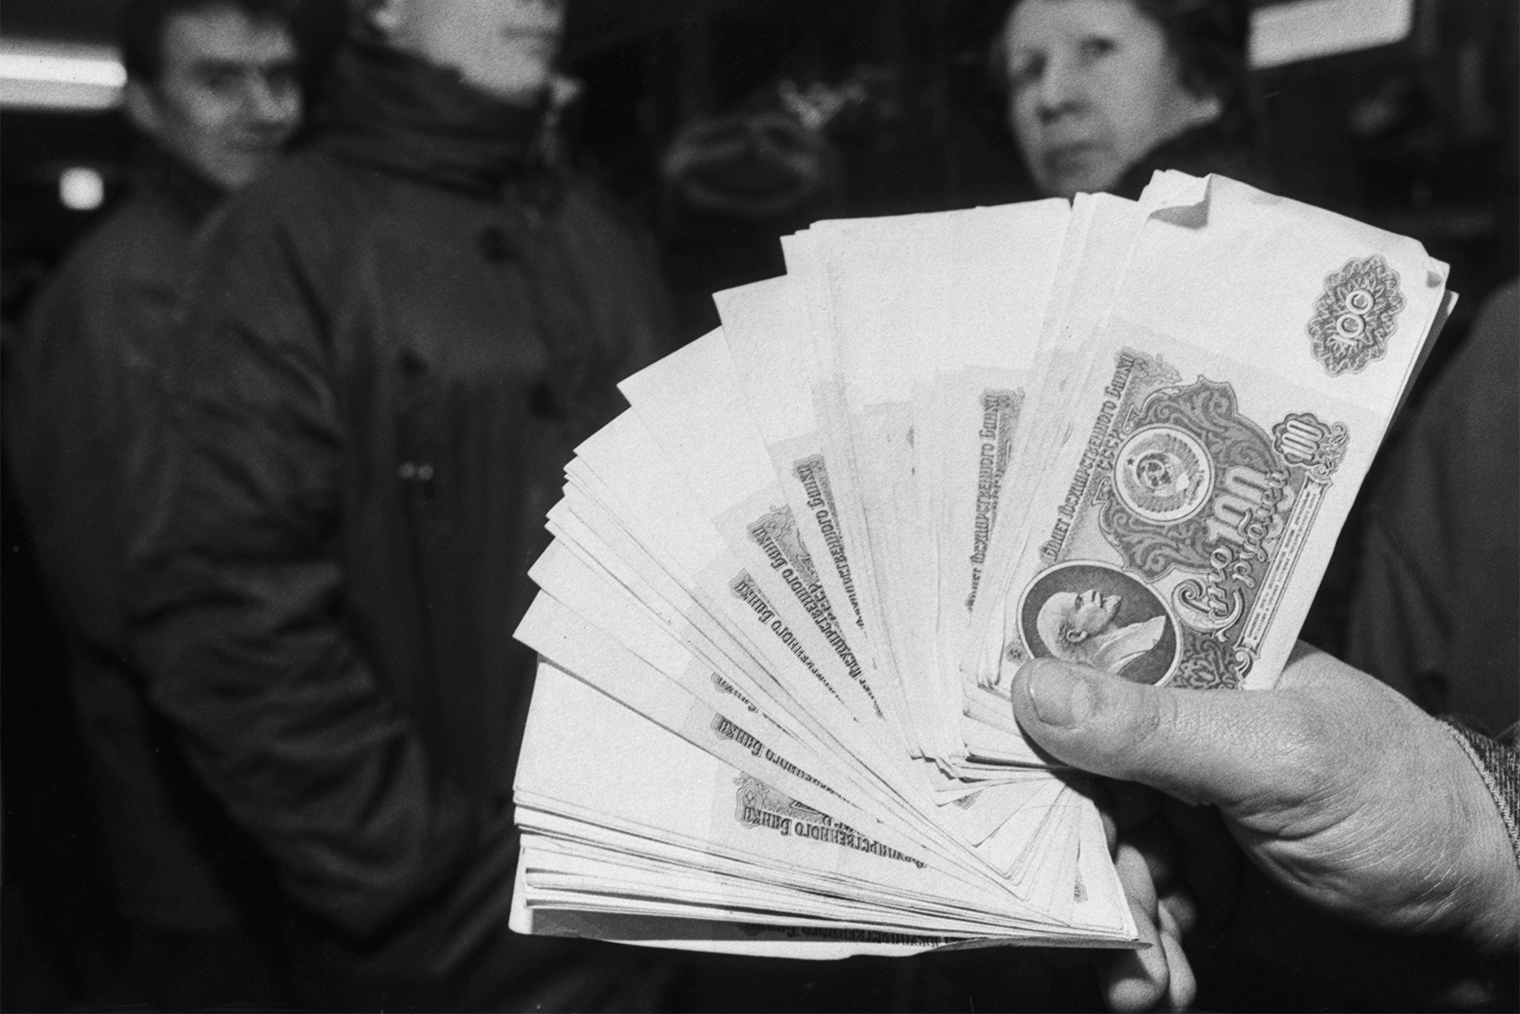 Обращение крупных банкнот старого образца прекратили через 3 часа после объявления реформы. Фото: Олег Булдаков / ТАСС